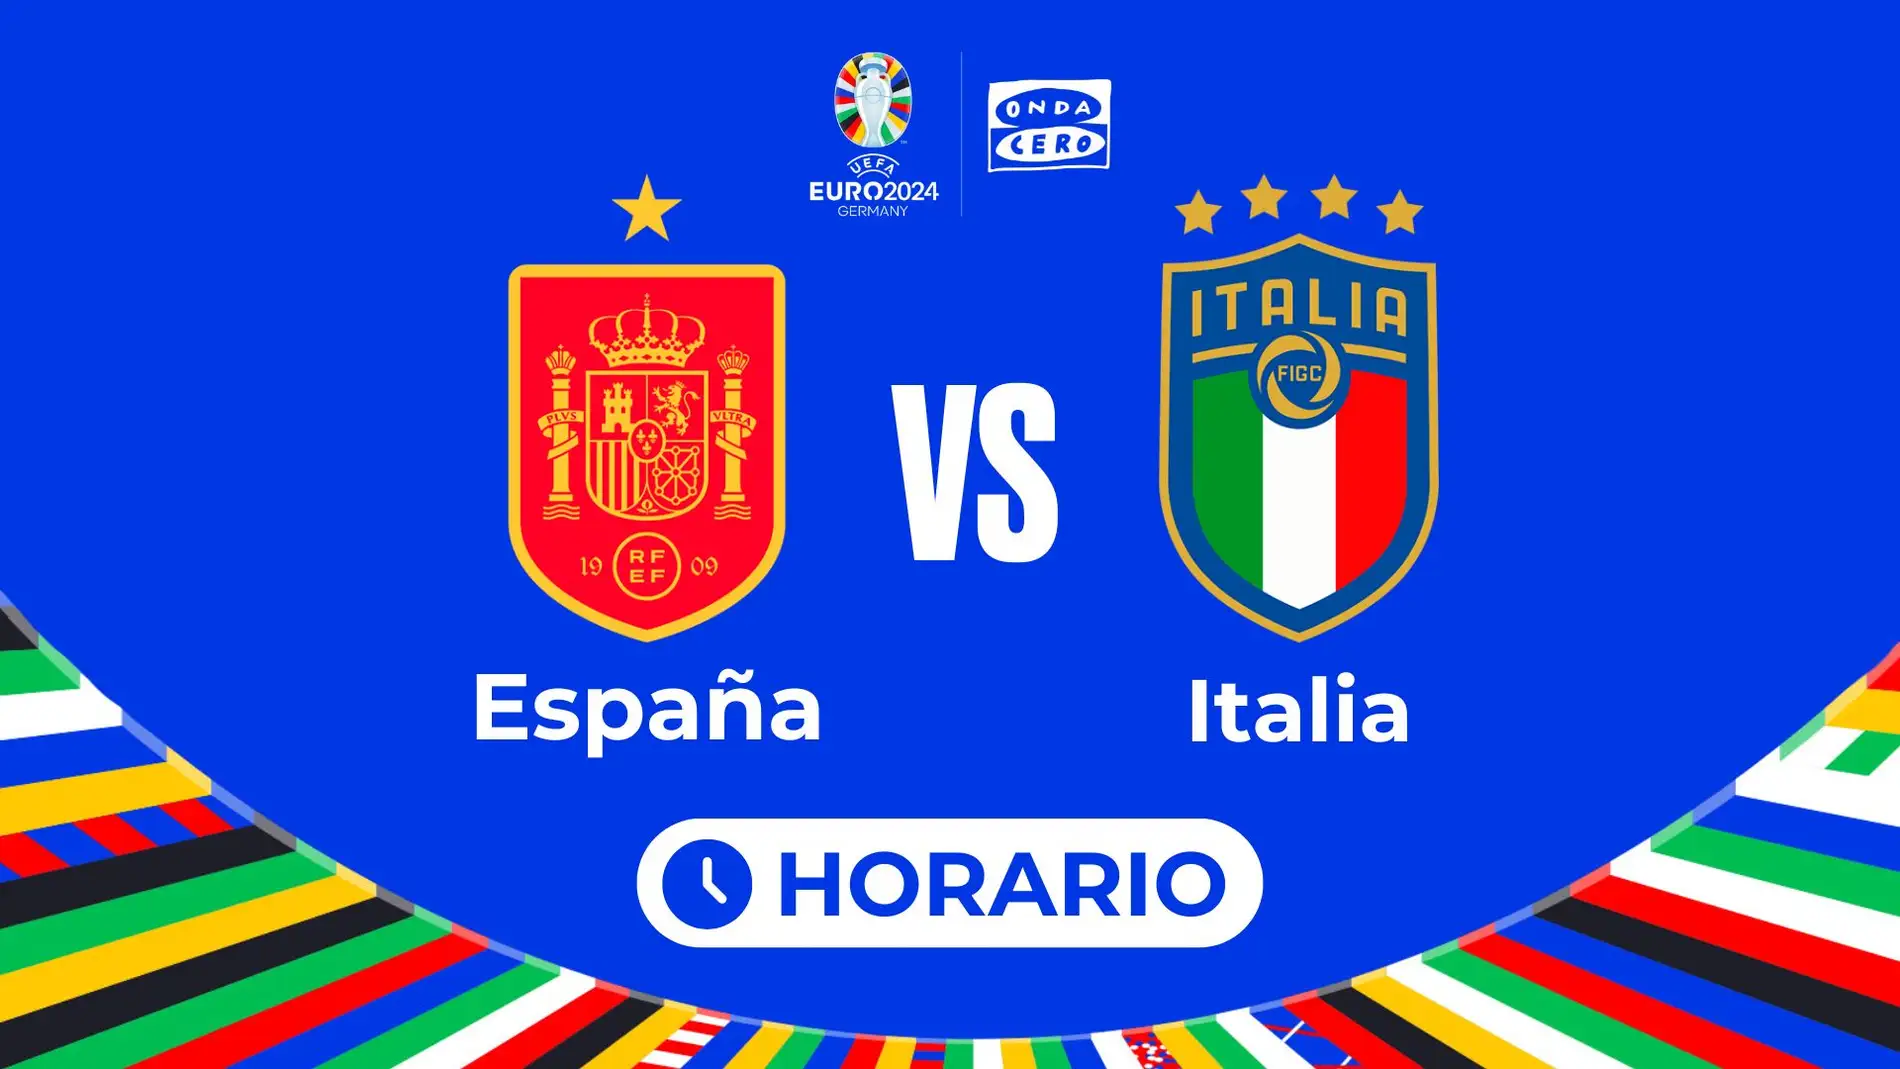 A qué hora juega España contra Italia en la Eurocopa 2024.